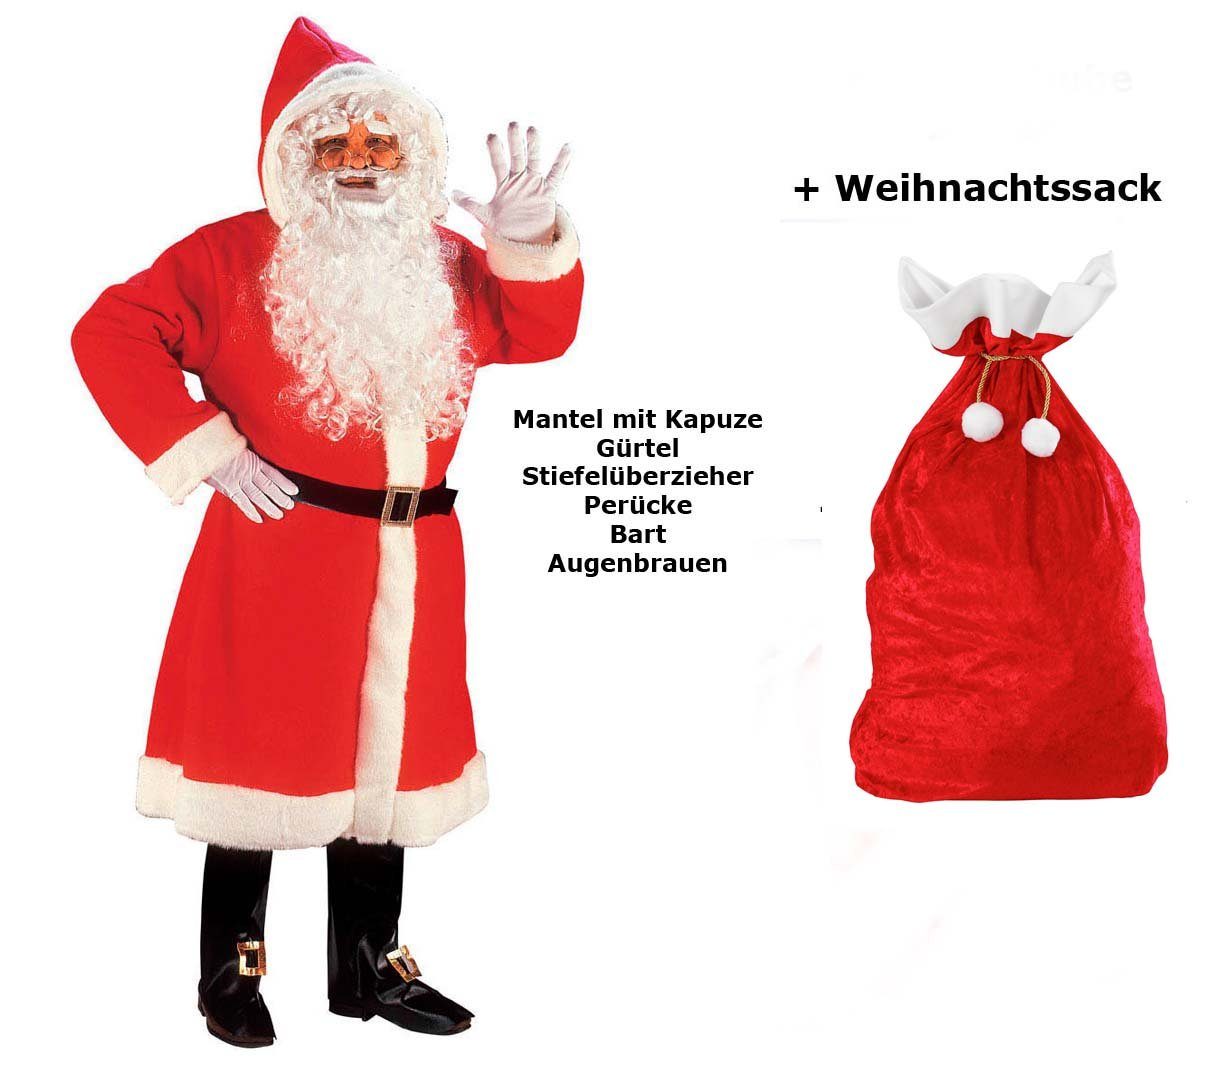 Scherzwelt Weihnachtsmann Luxus Weihnachtmann Mantel mit Perücke, Bart, ...M/L - Set mit Sack, Weihnachtsmannkostüm, Weihnachtskostüm, Weihnachtsmann | Weihnachtsmänner